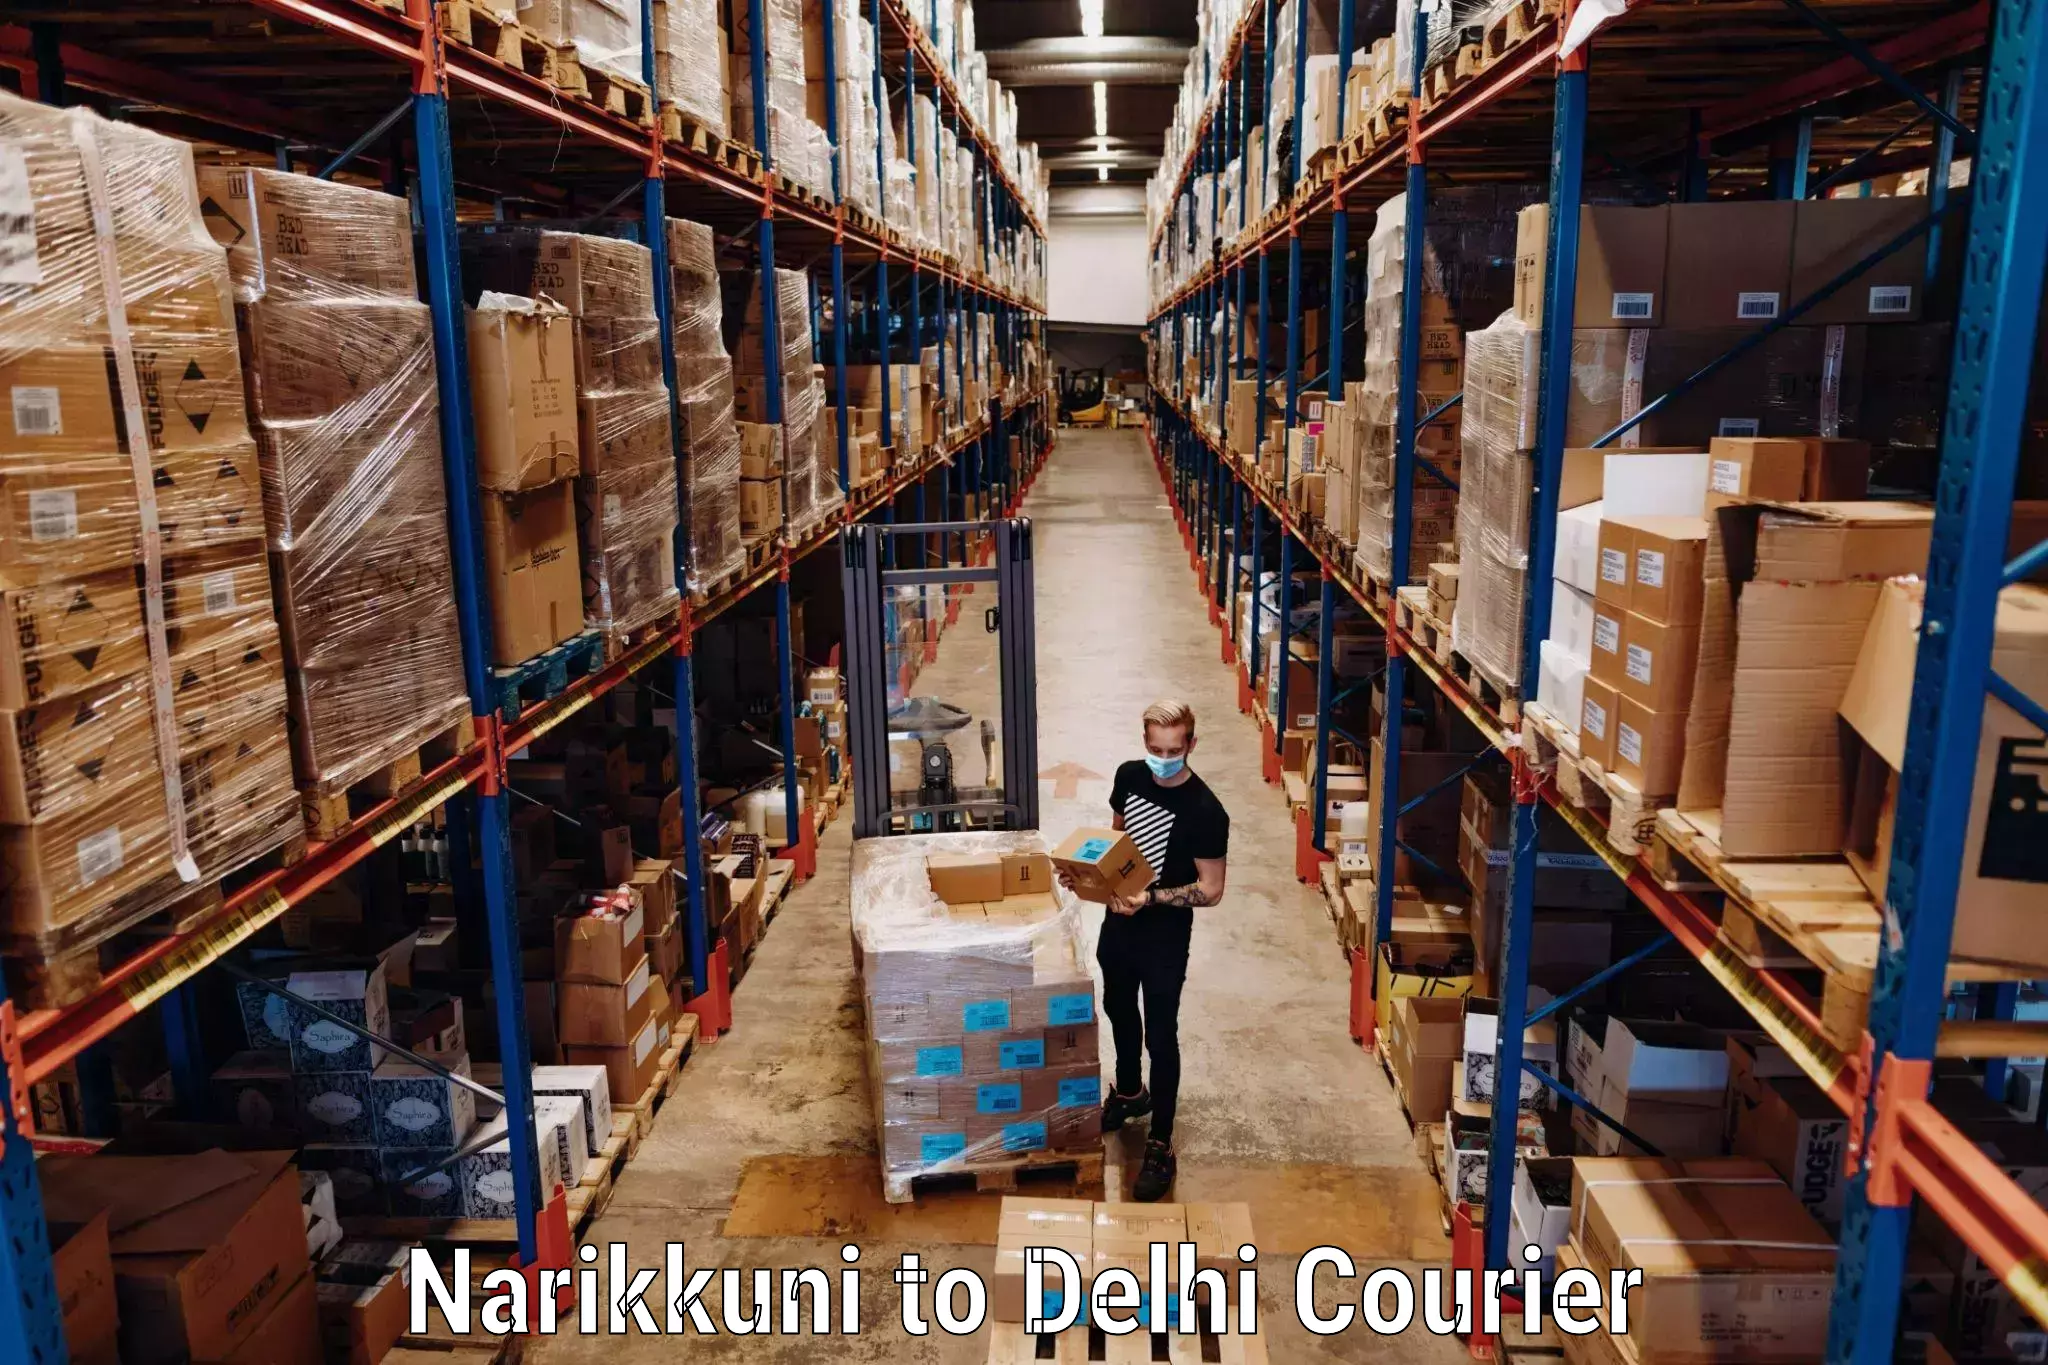 Doorstep luggage pickup Narikkuni to Delhi Technological University DTU